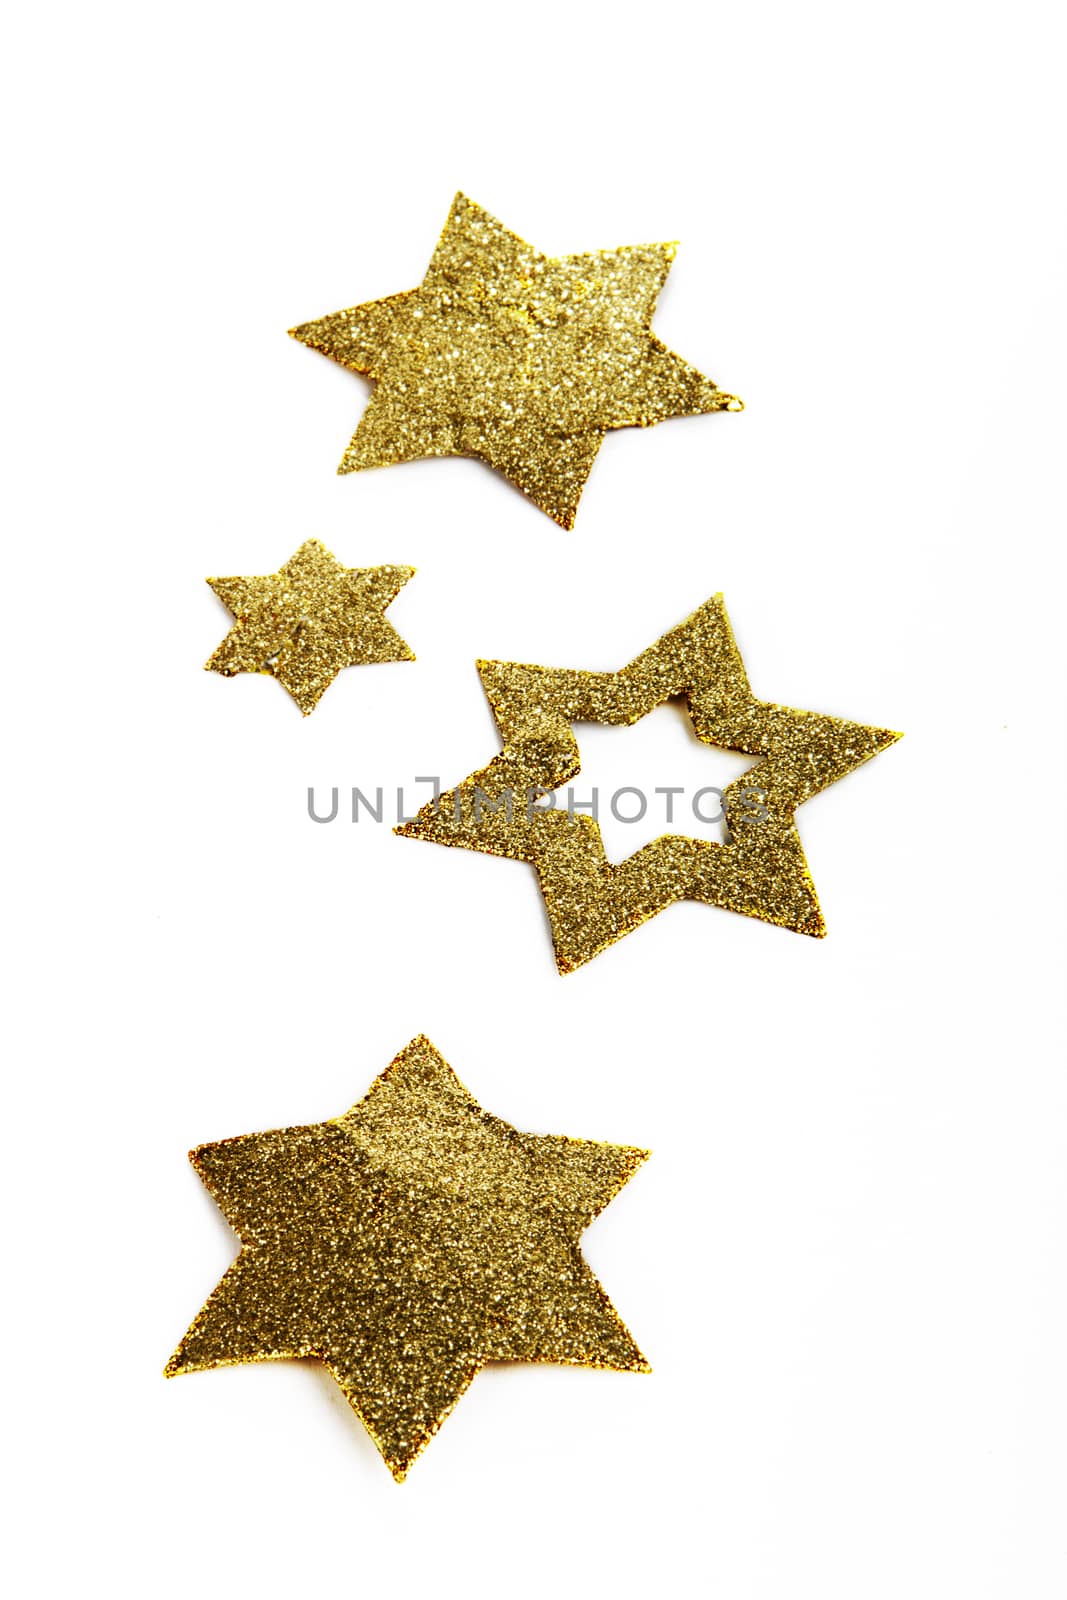 golden christmas stars on white background 